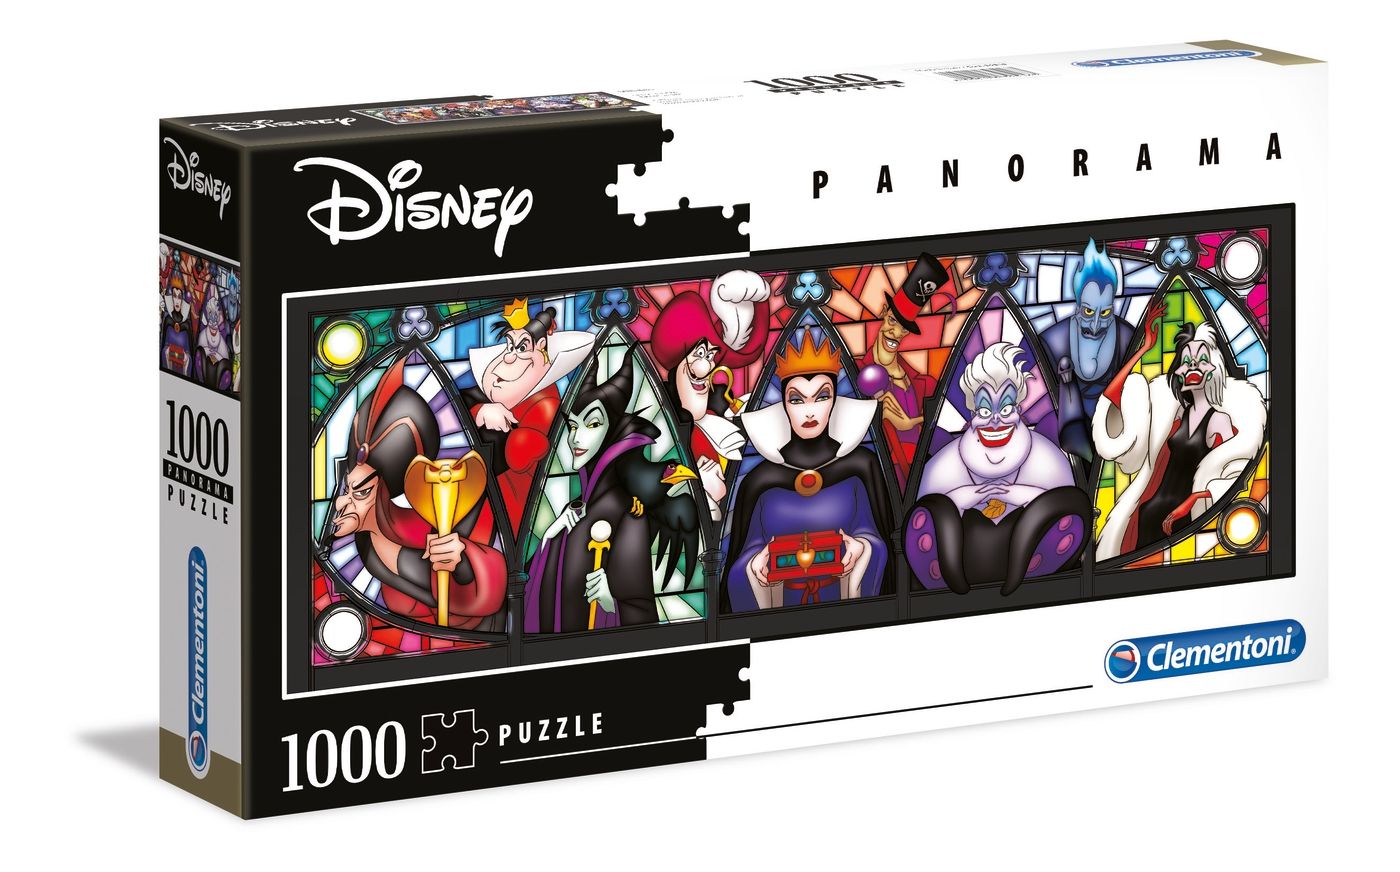 Puzzle Clementoni 1000 dílků panorama - Disney - Ničemové 39516